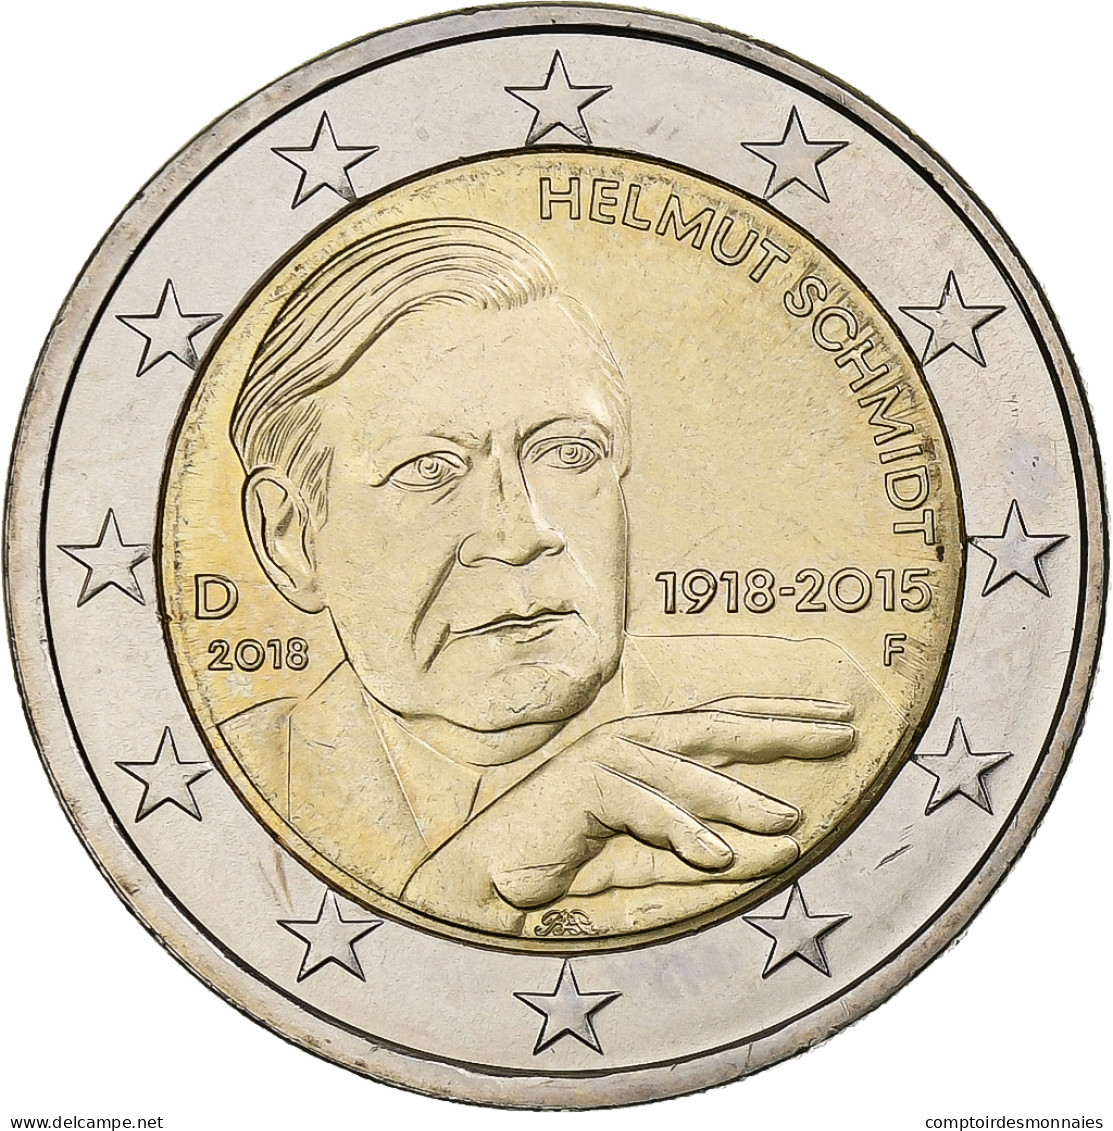 République Fédérale Allemande, 2 Euro, 2018, Stuttgart, Bimétallique, SPL - Germania